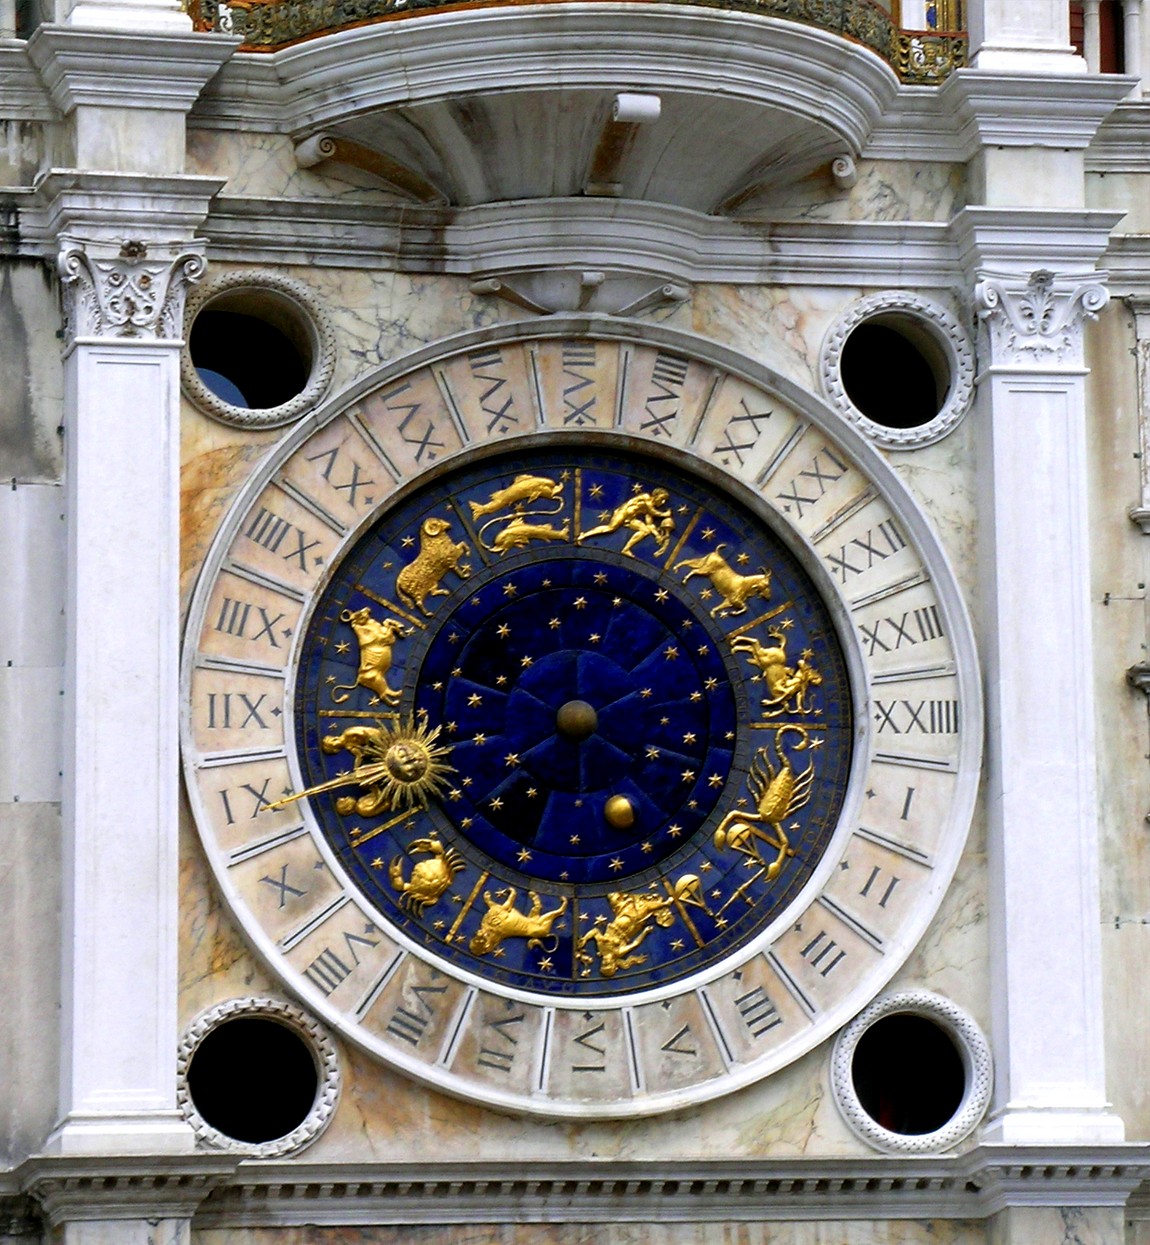 Базилика Сан Марко — кафедральный Собор Венеции (Часовая башня)